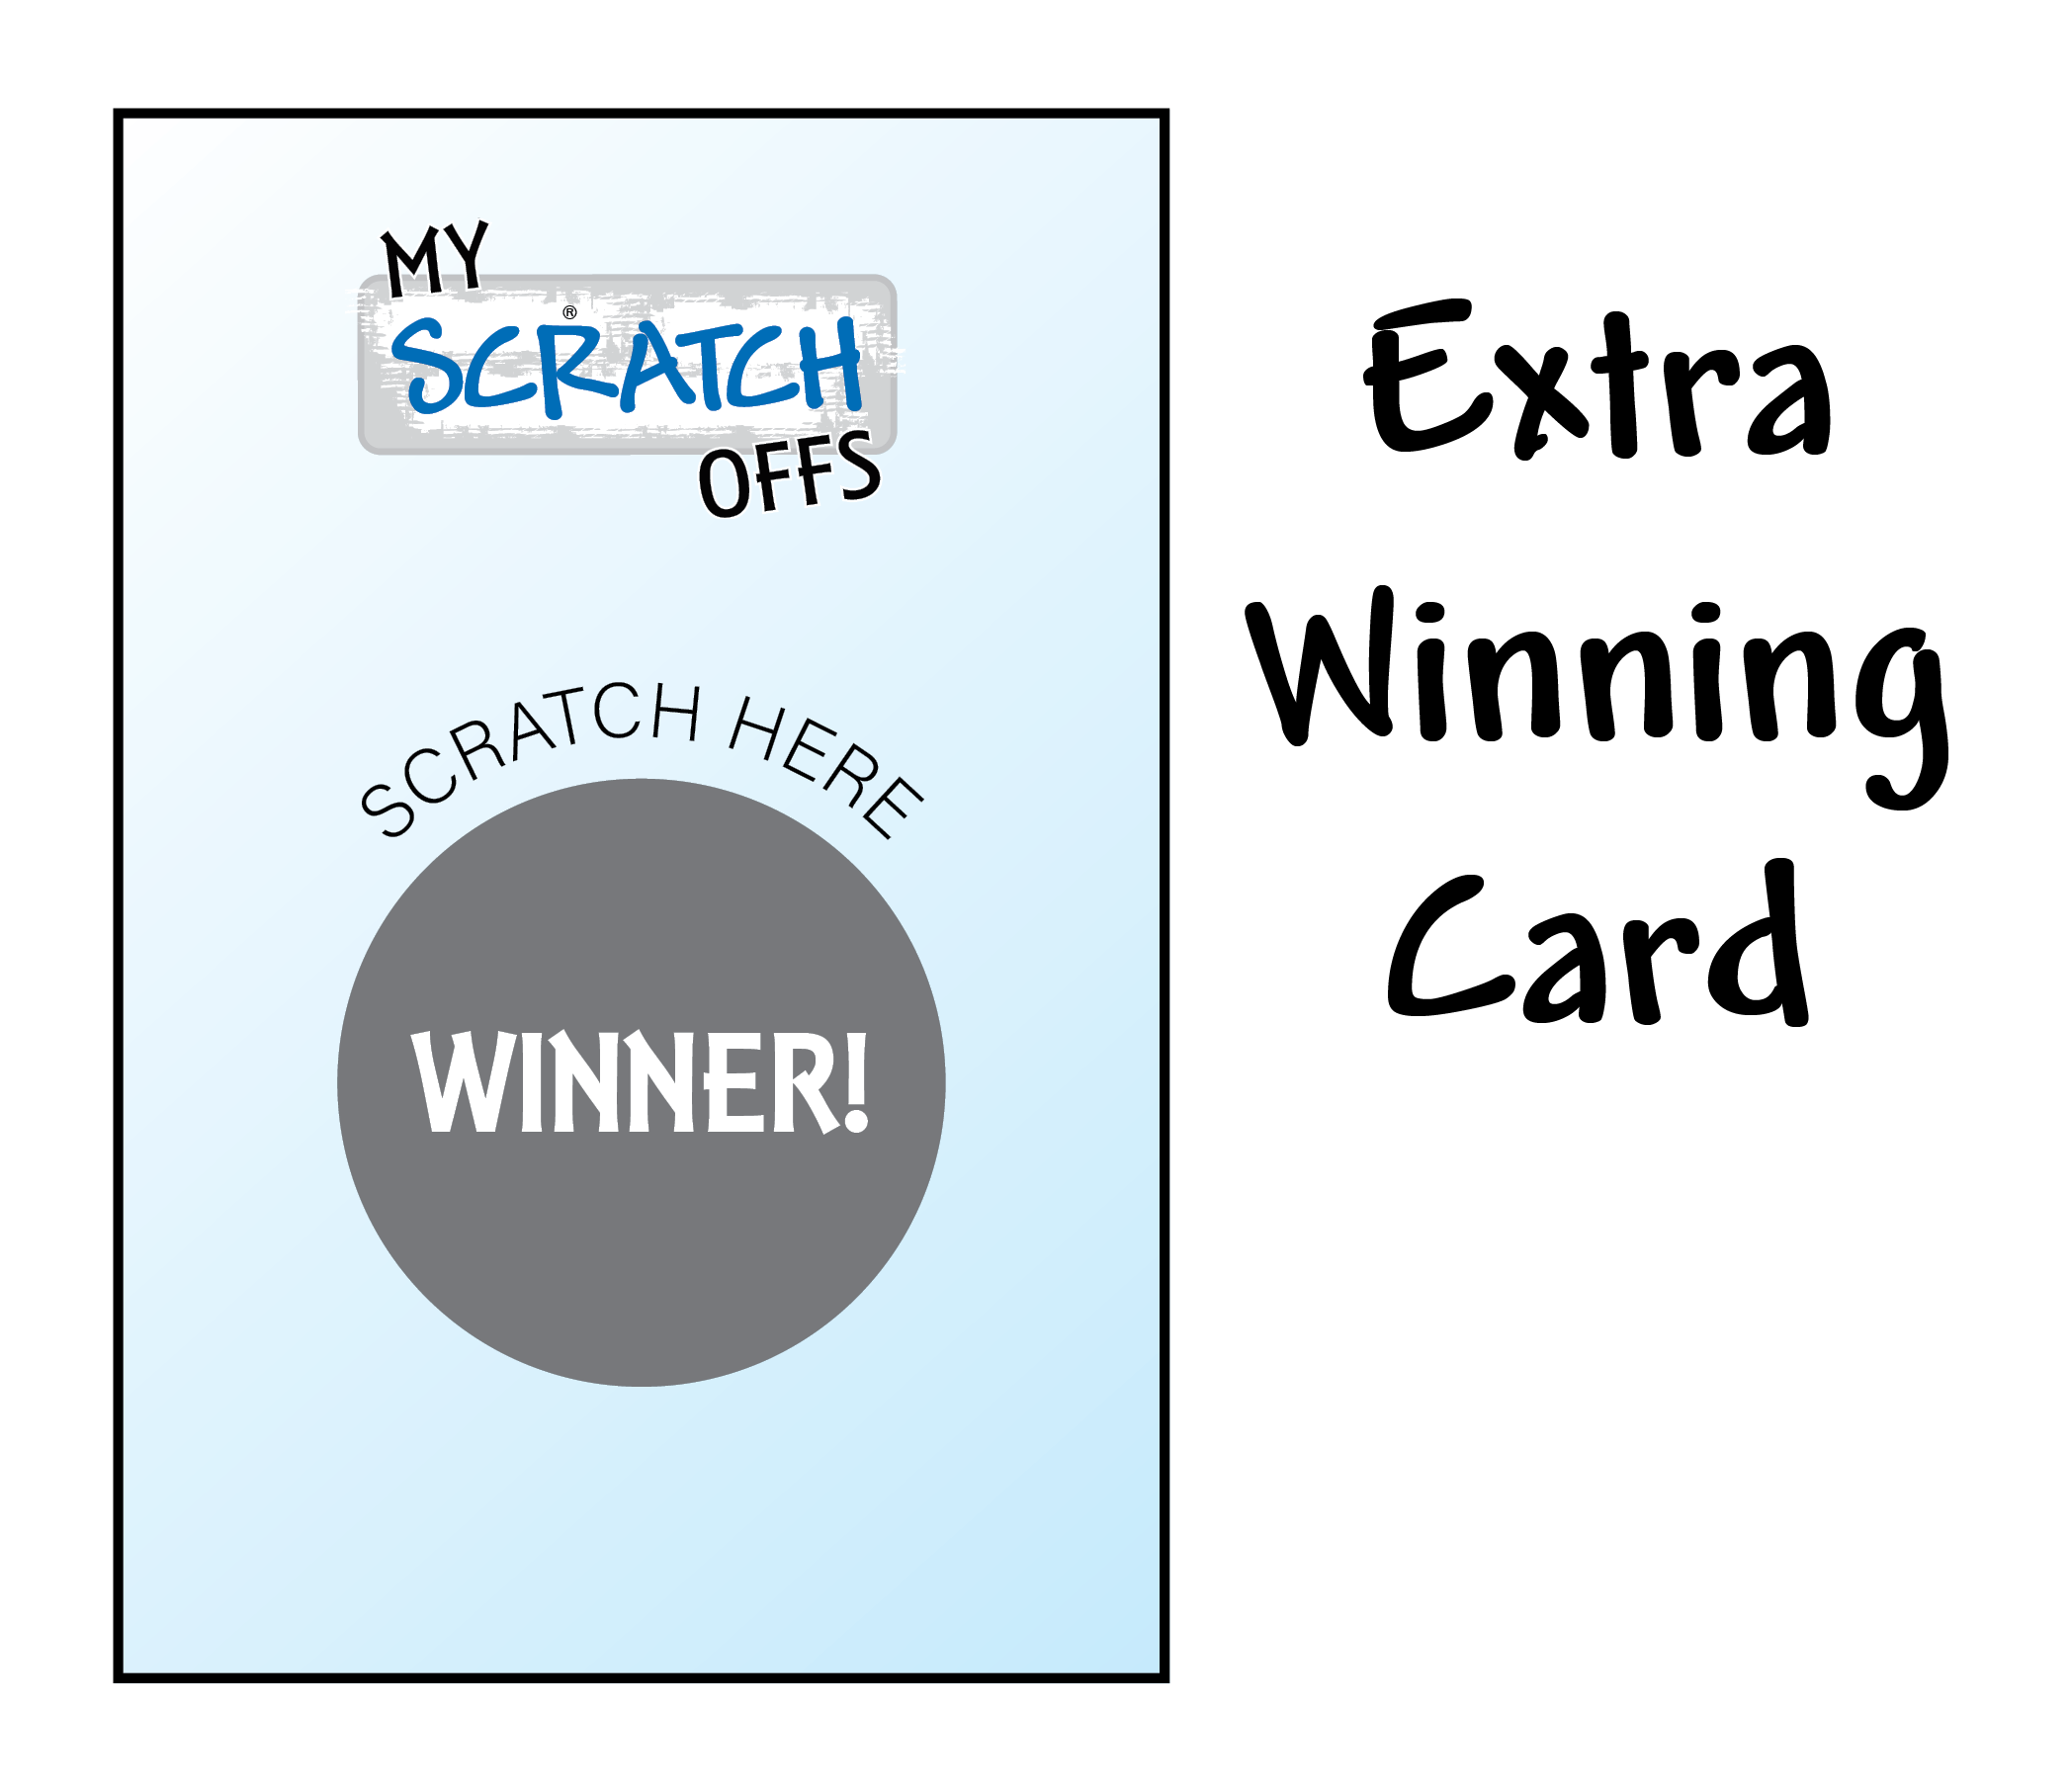 Extra Winning Card - My Scratch Offs